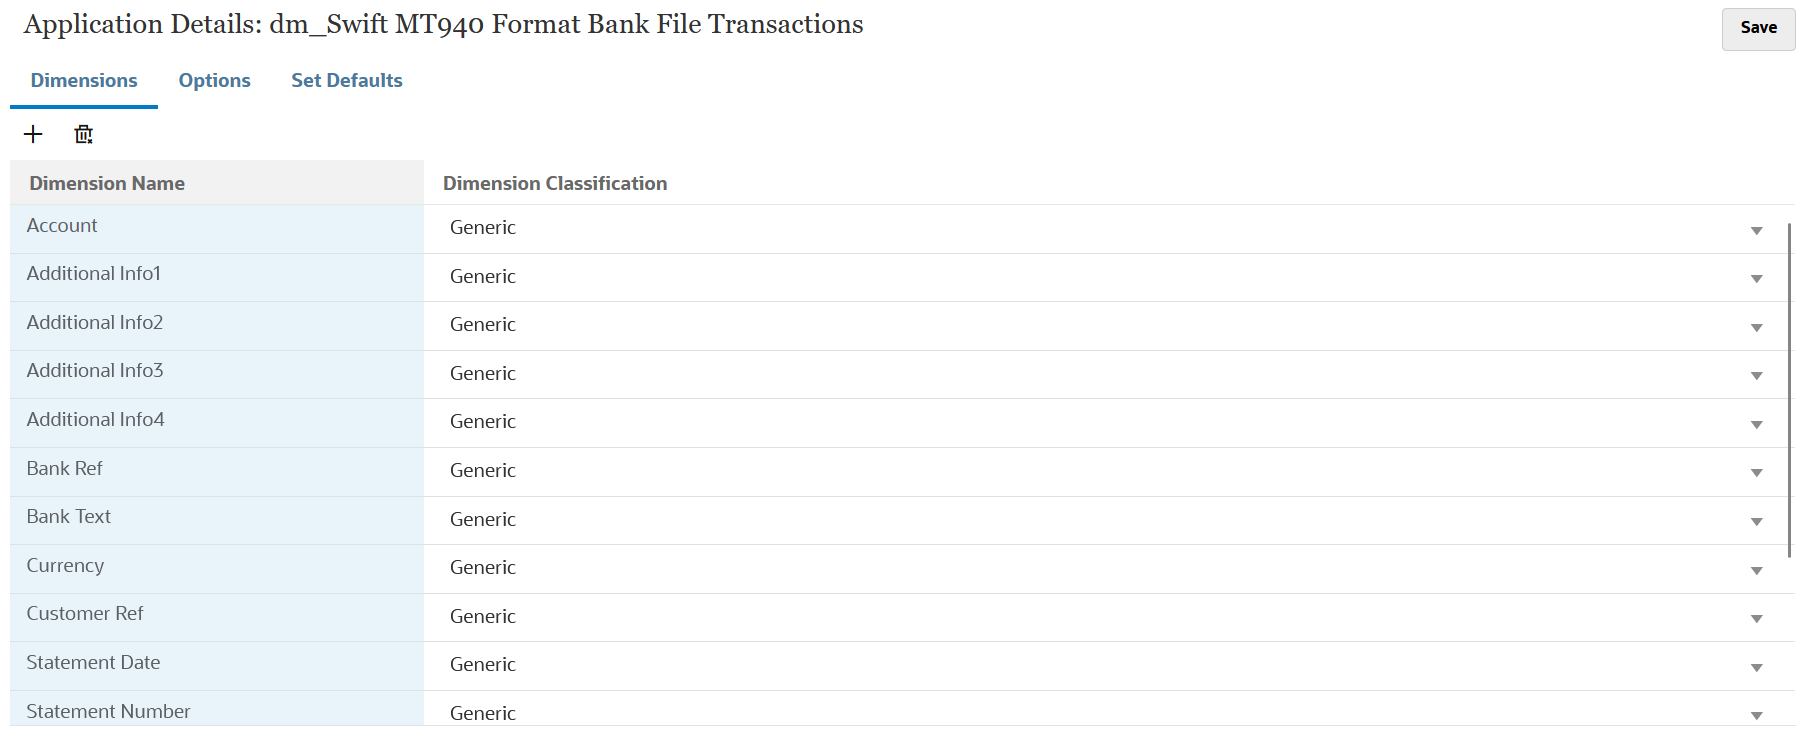 影像顯示「SWIFT MT940 銀行檔案交易」的維度詳細資料。